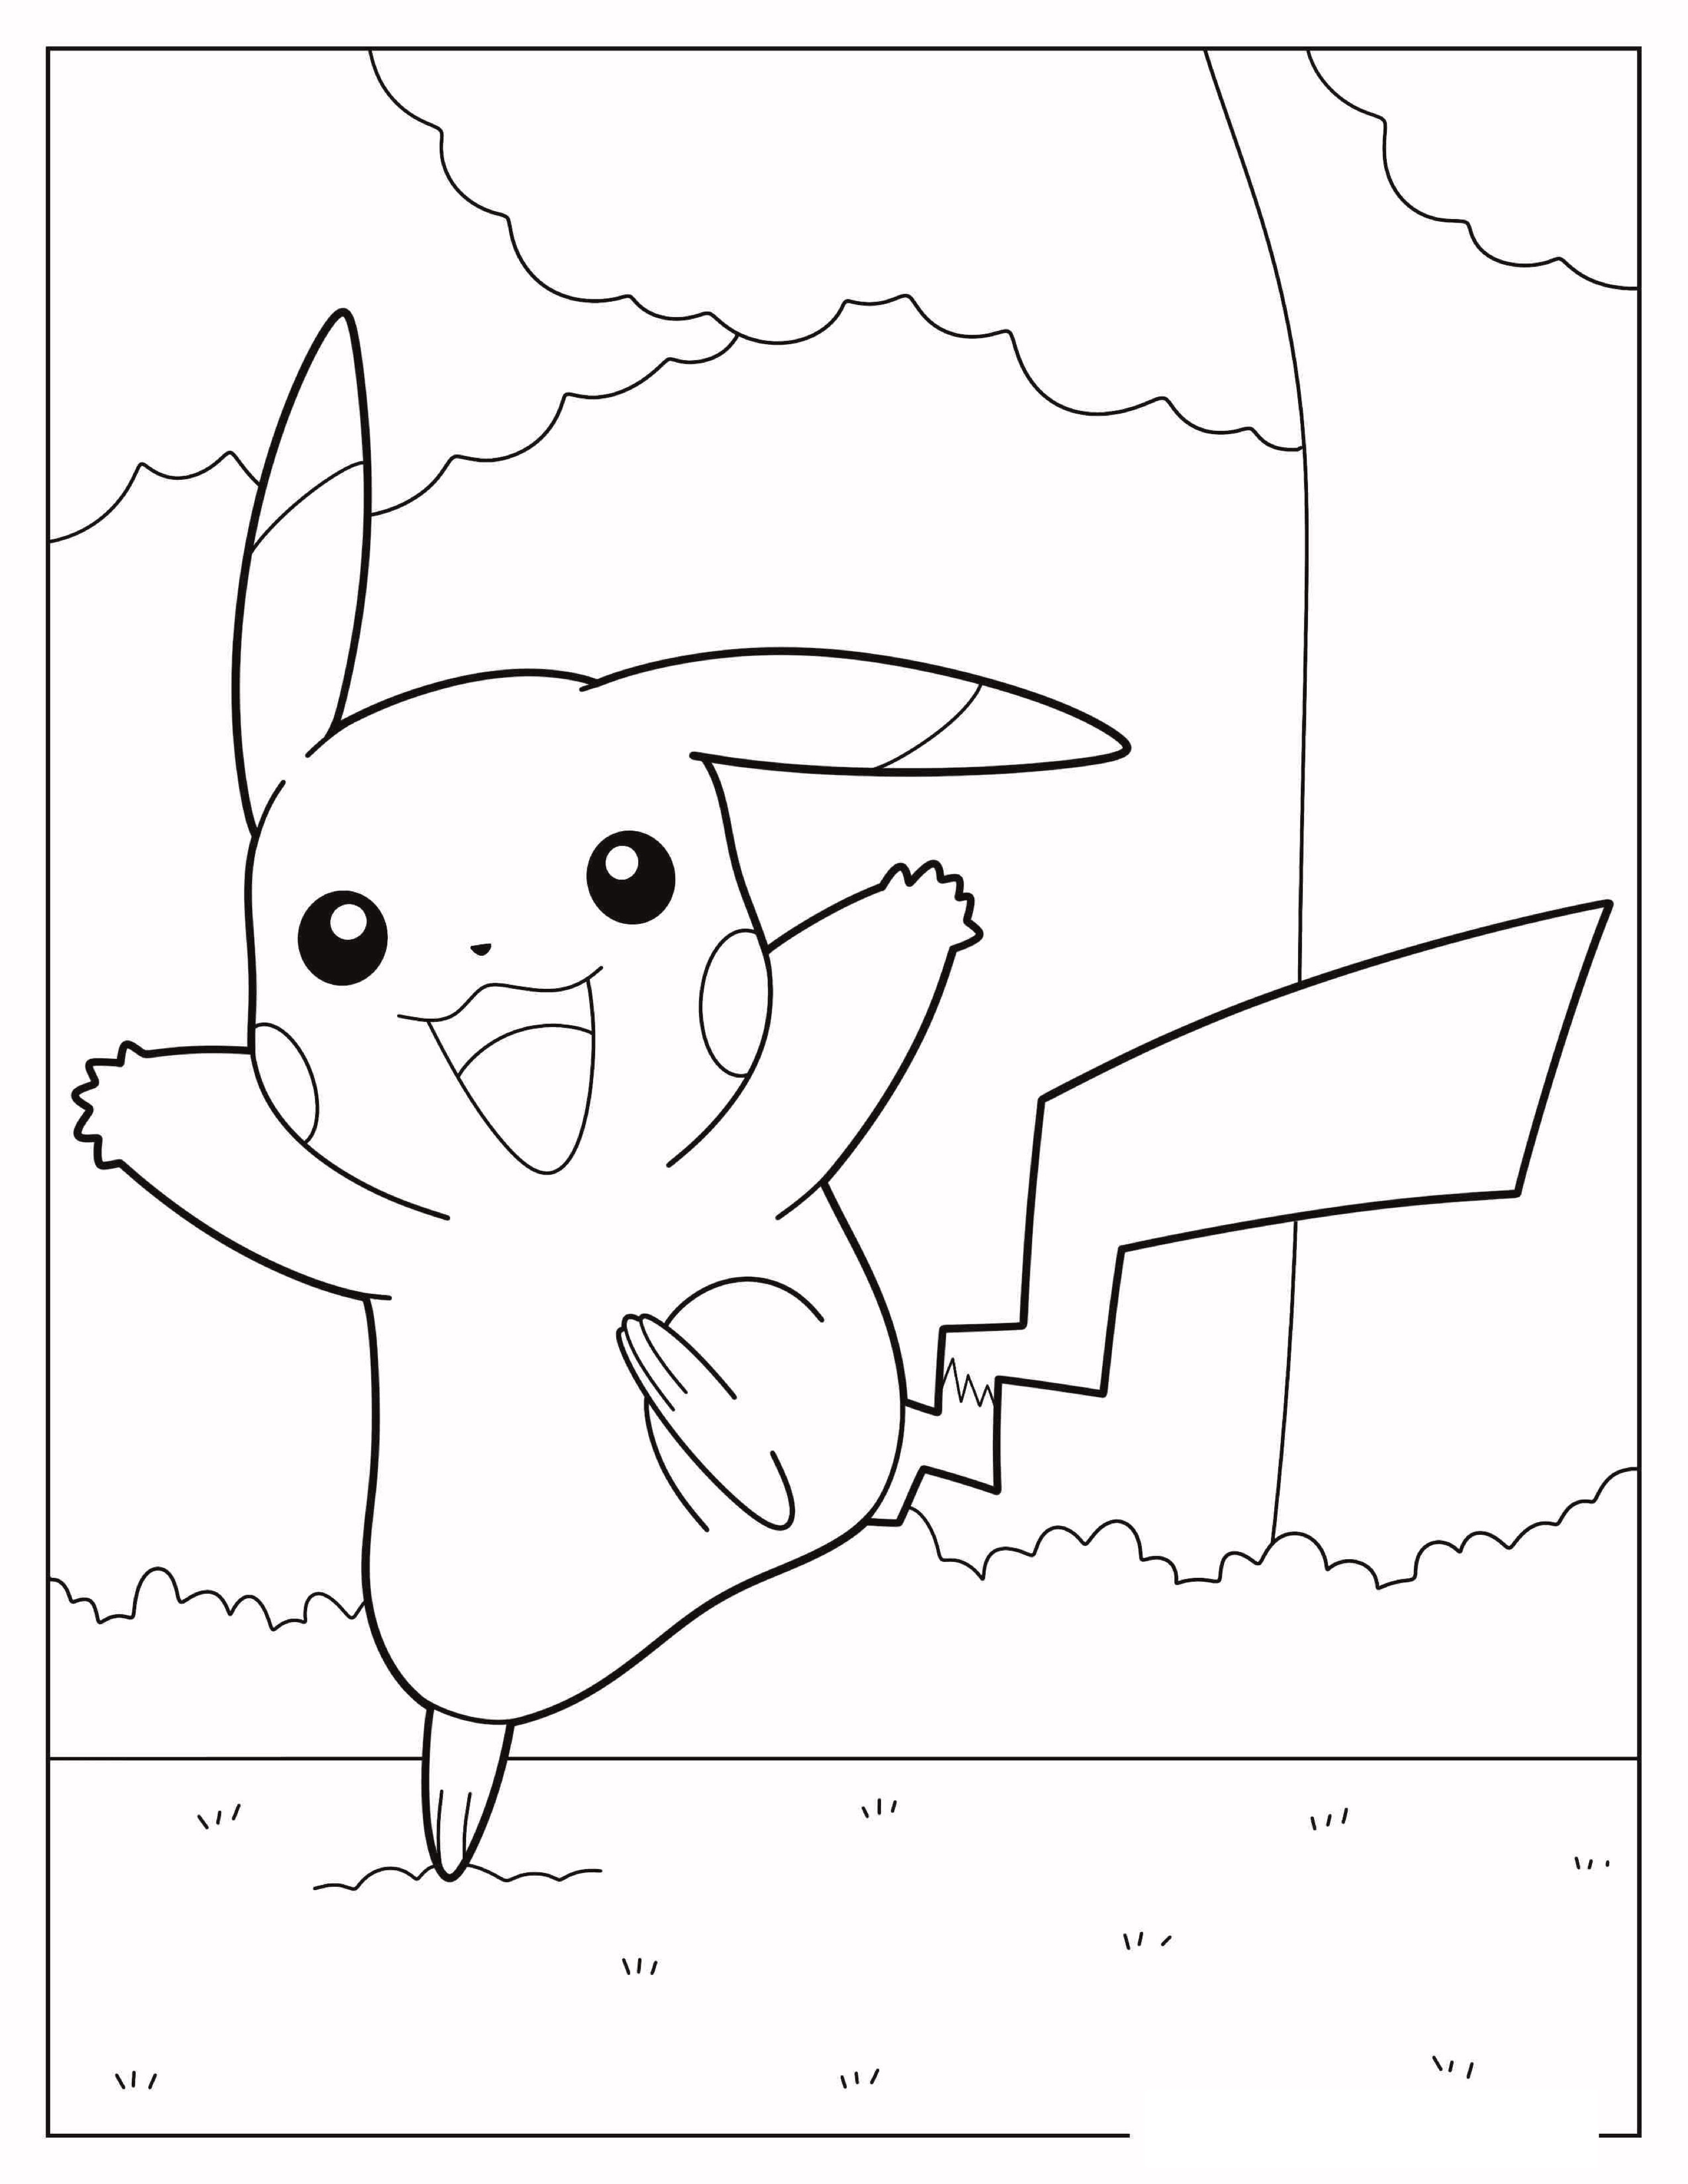 Playful-Pikachu-Coloring-In.jpg